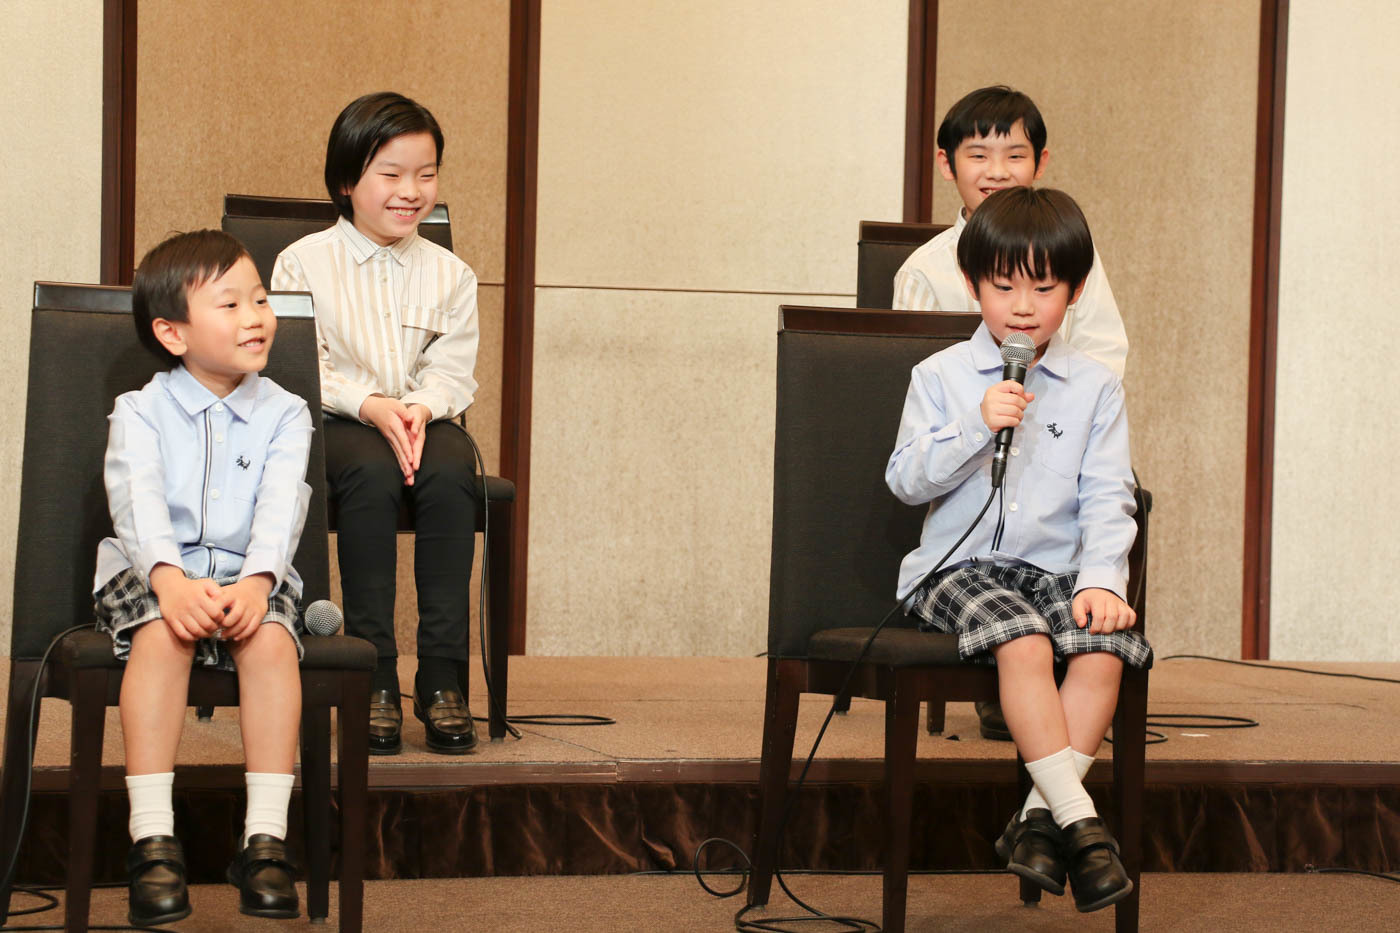 （上段左から）豊田侑泉、生出真太郎（下段左から）谷慶人、奥田奏太